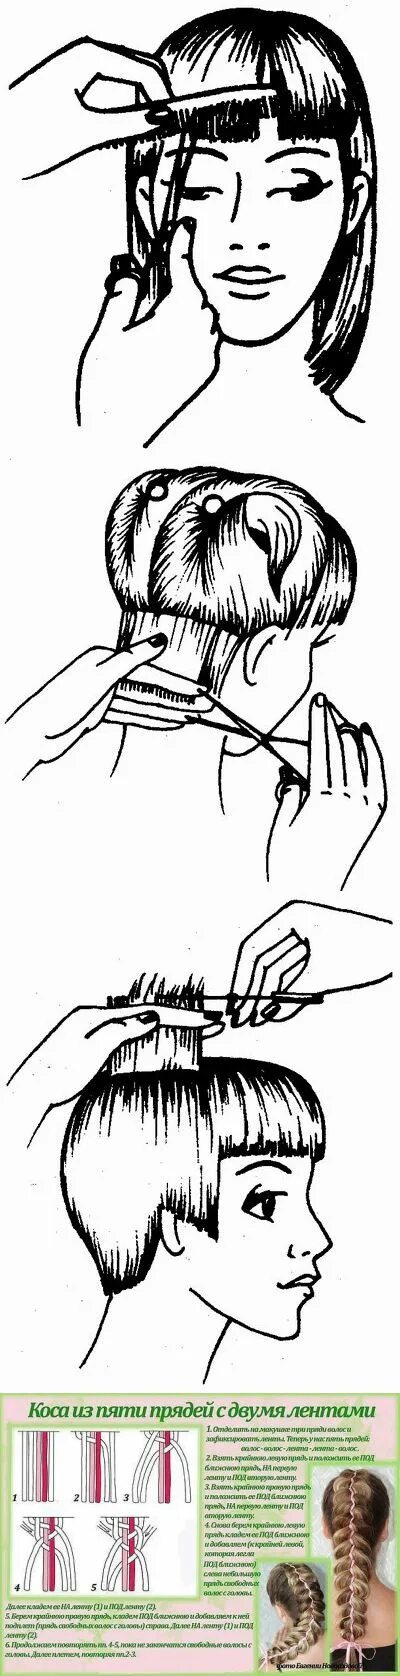 Печь испечь стричь подстричь. Стрижка на короткие волосы самостоятельно. Приспособа для самостоятельной стрижки. Техника стрижки волос для начинающих ножницами. Подстричь волосы самостоятельно схема.